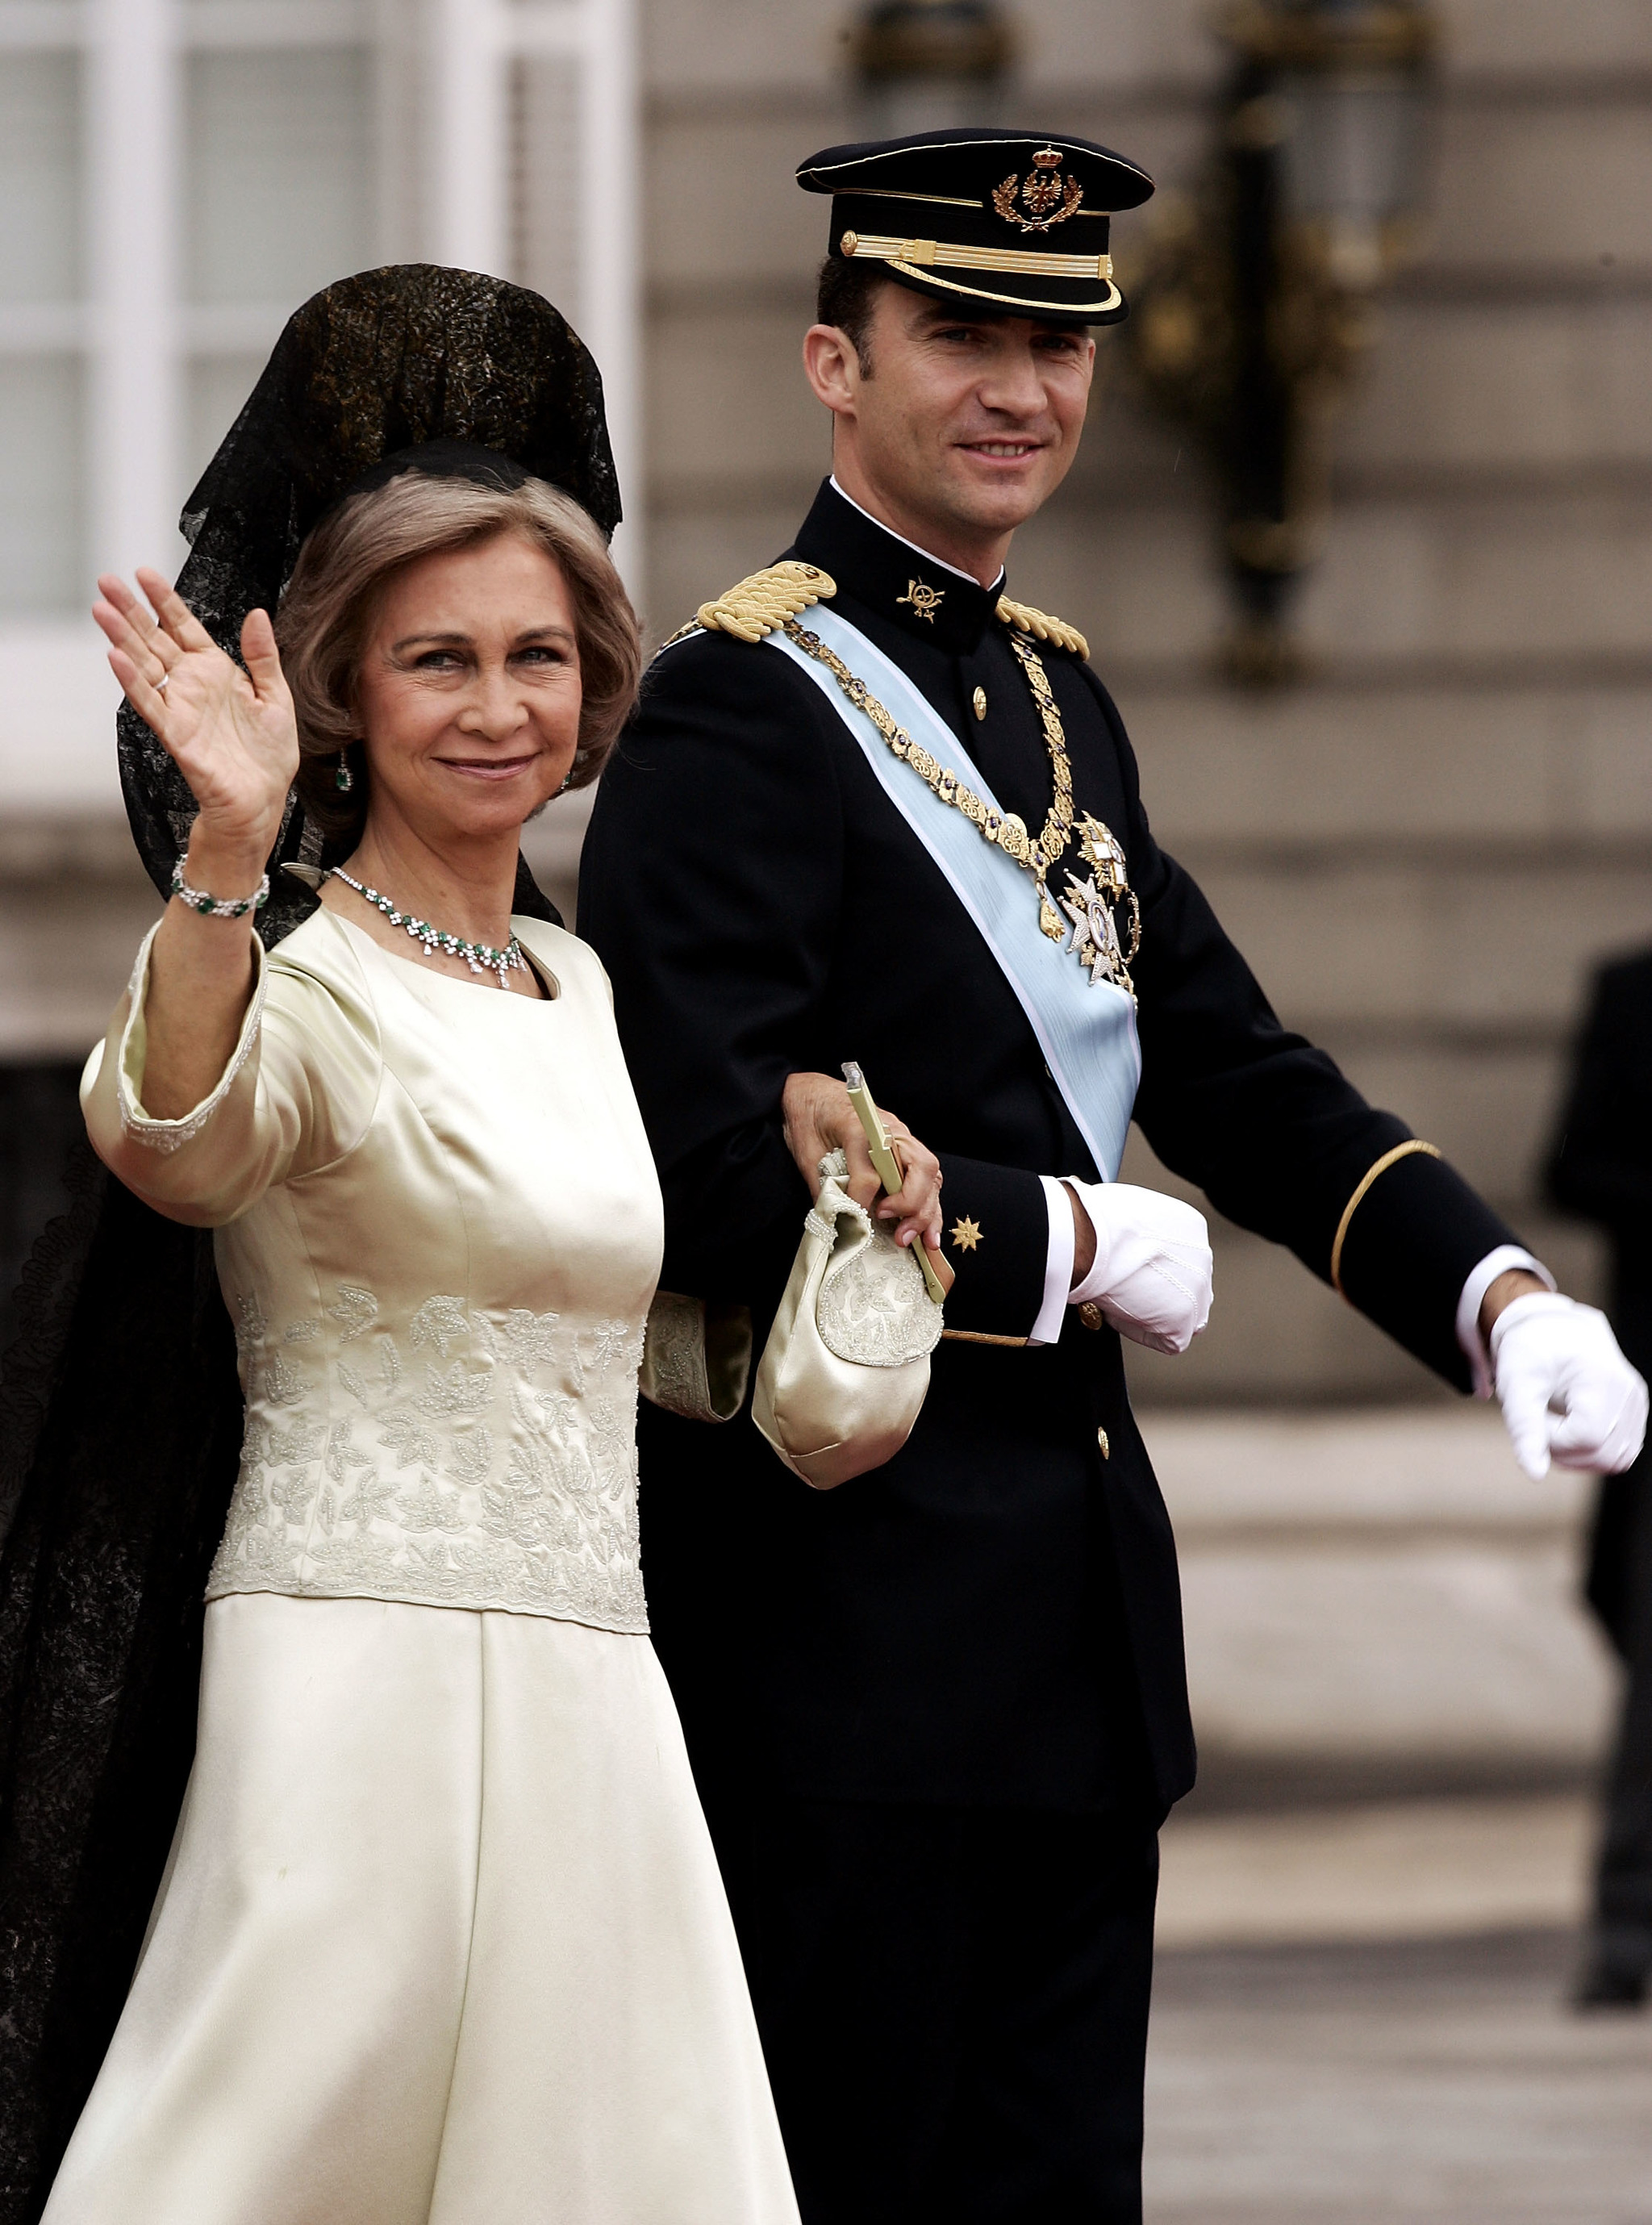 La reina Sofía, una elegante madrina de boda.